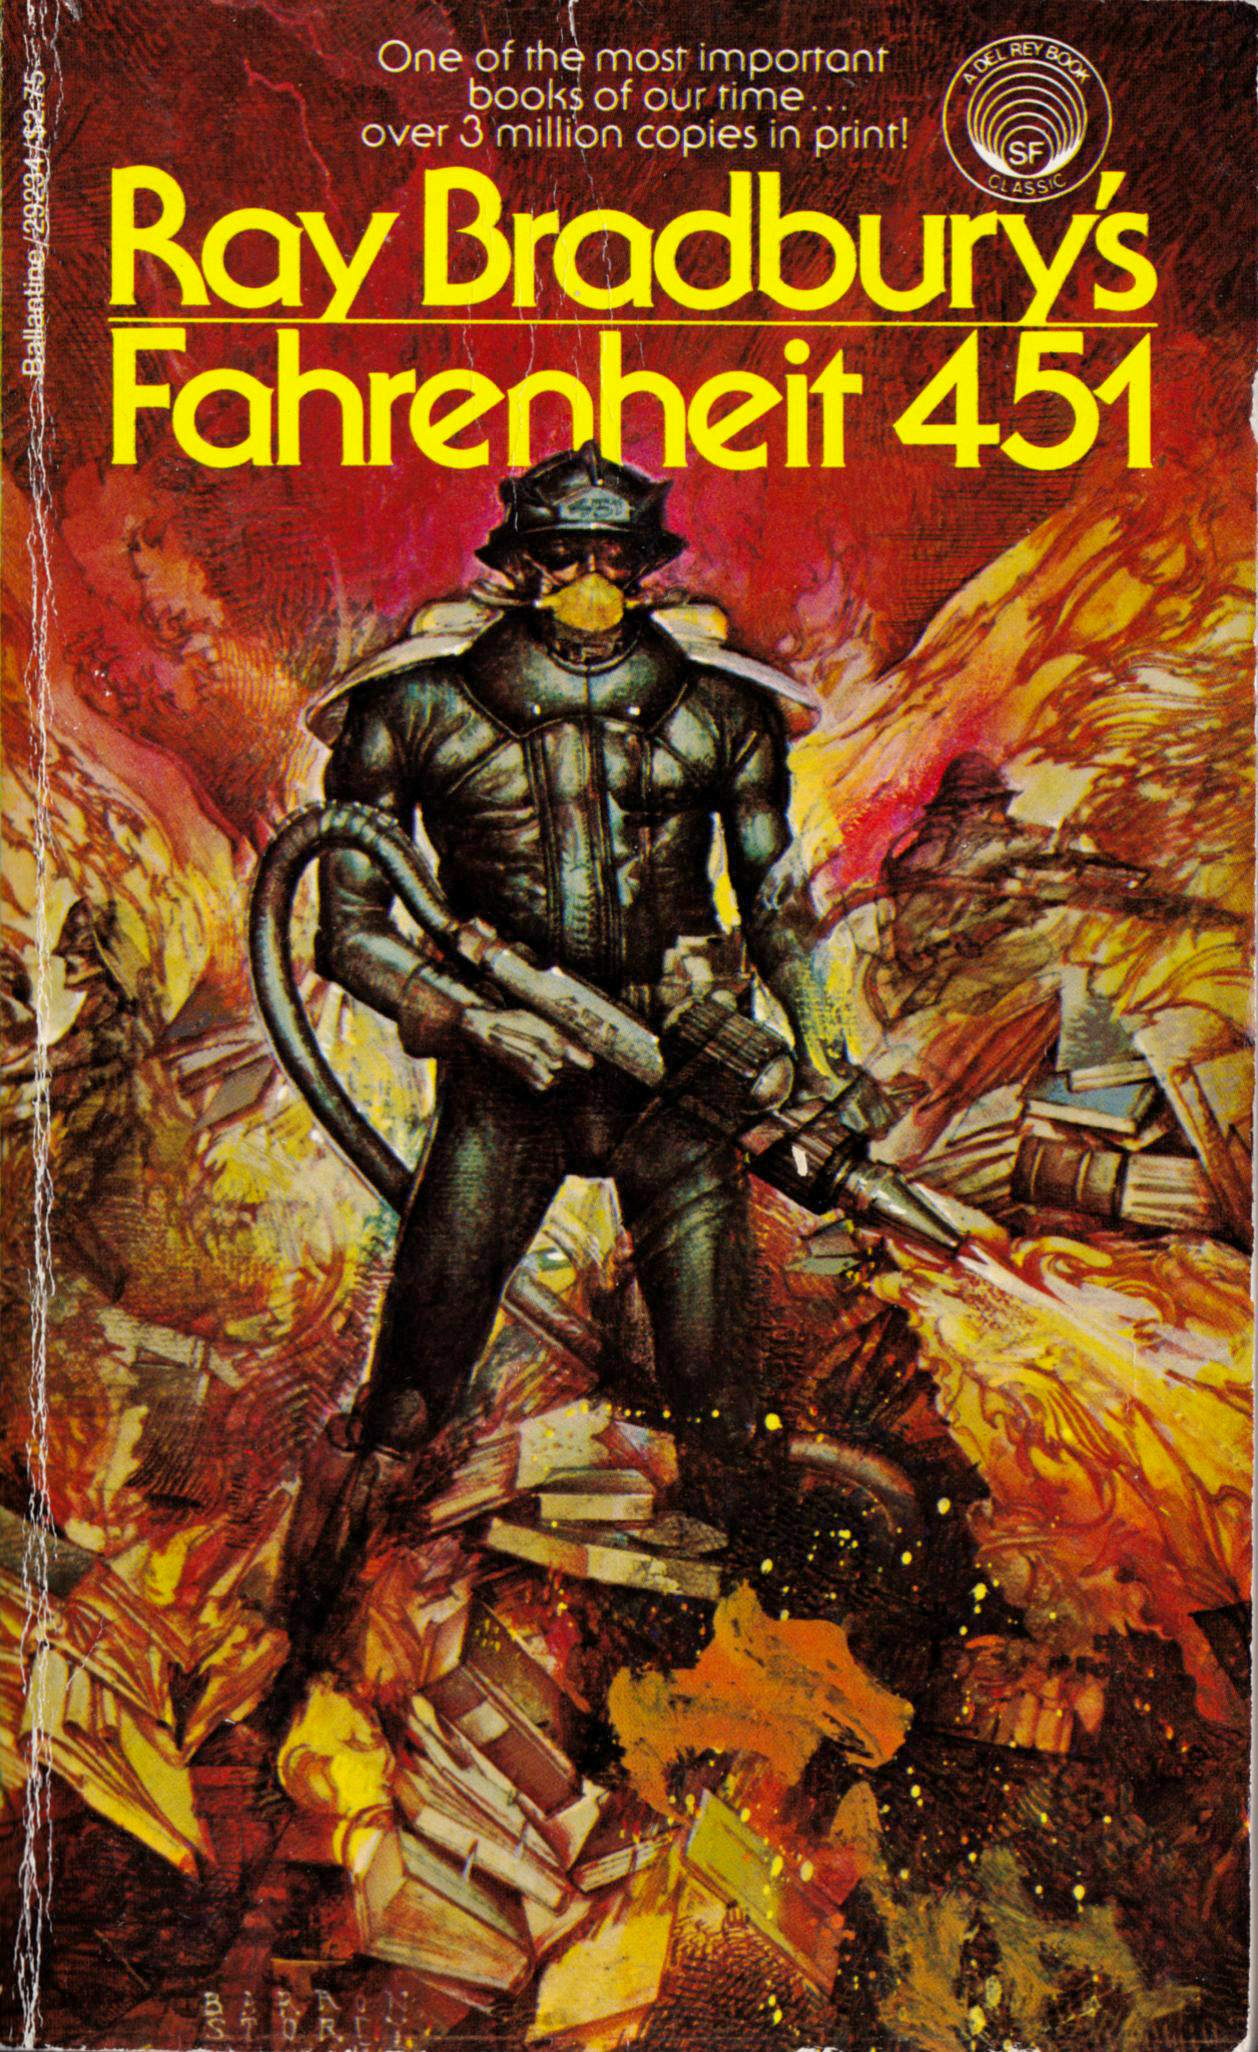 Spiraken Book Review: August 2014- Fahrenheit 451